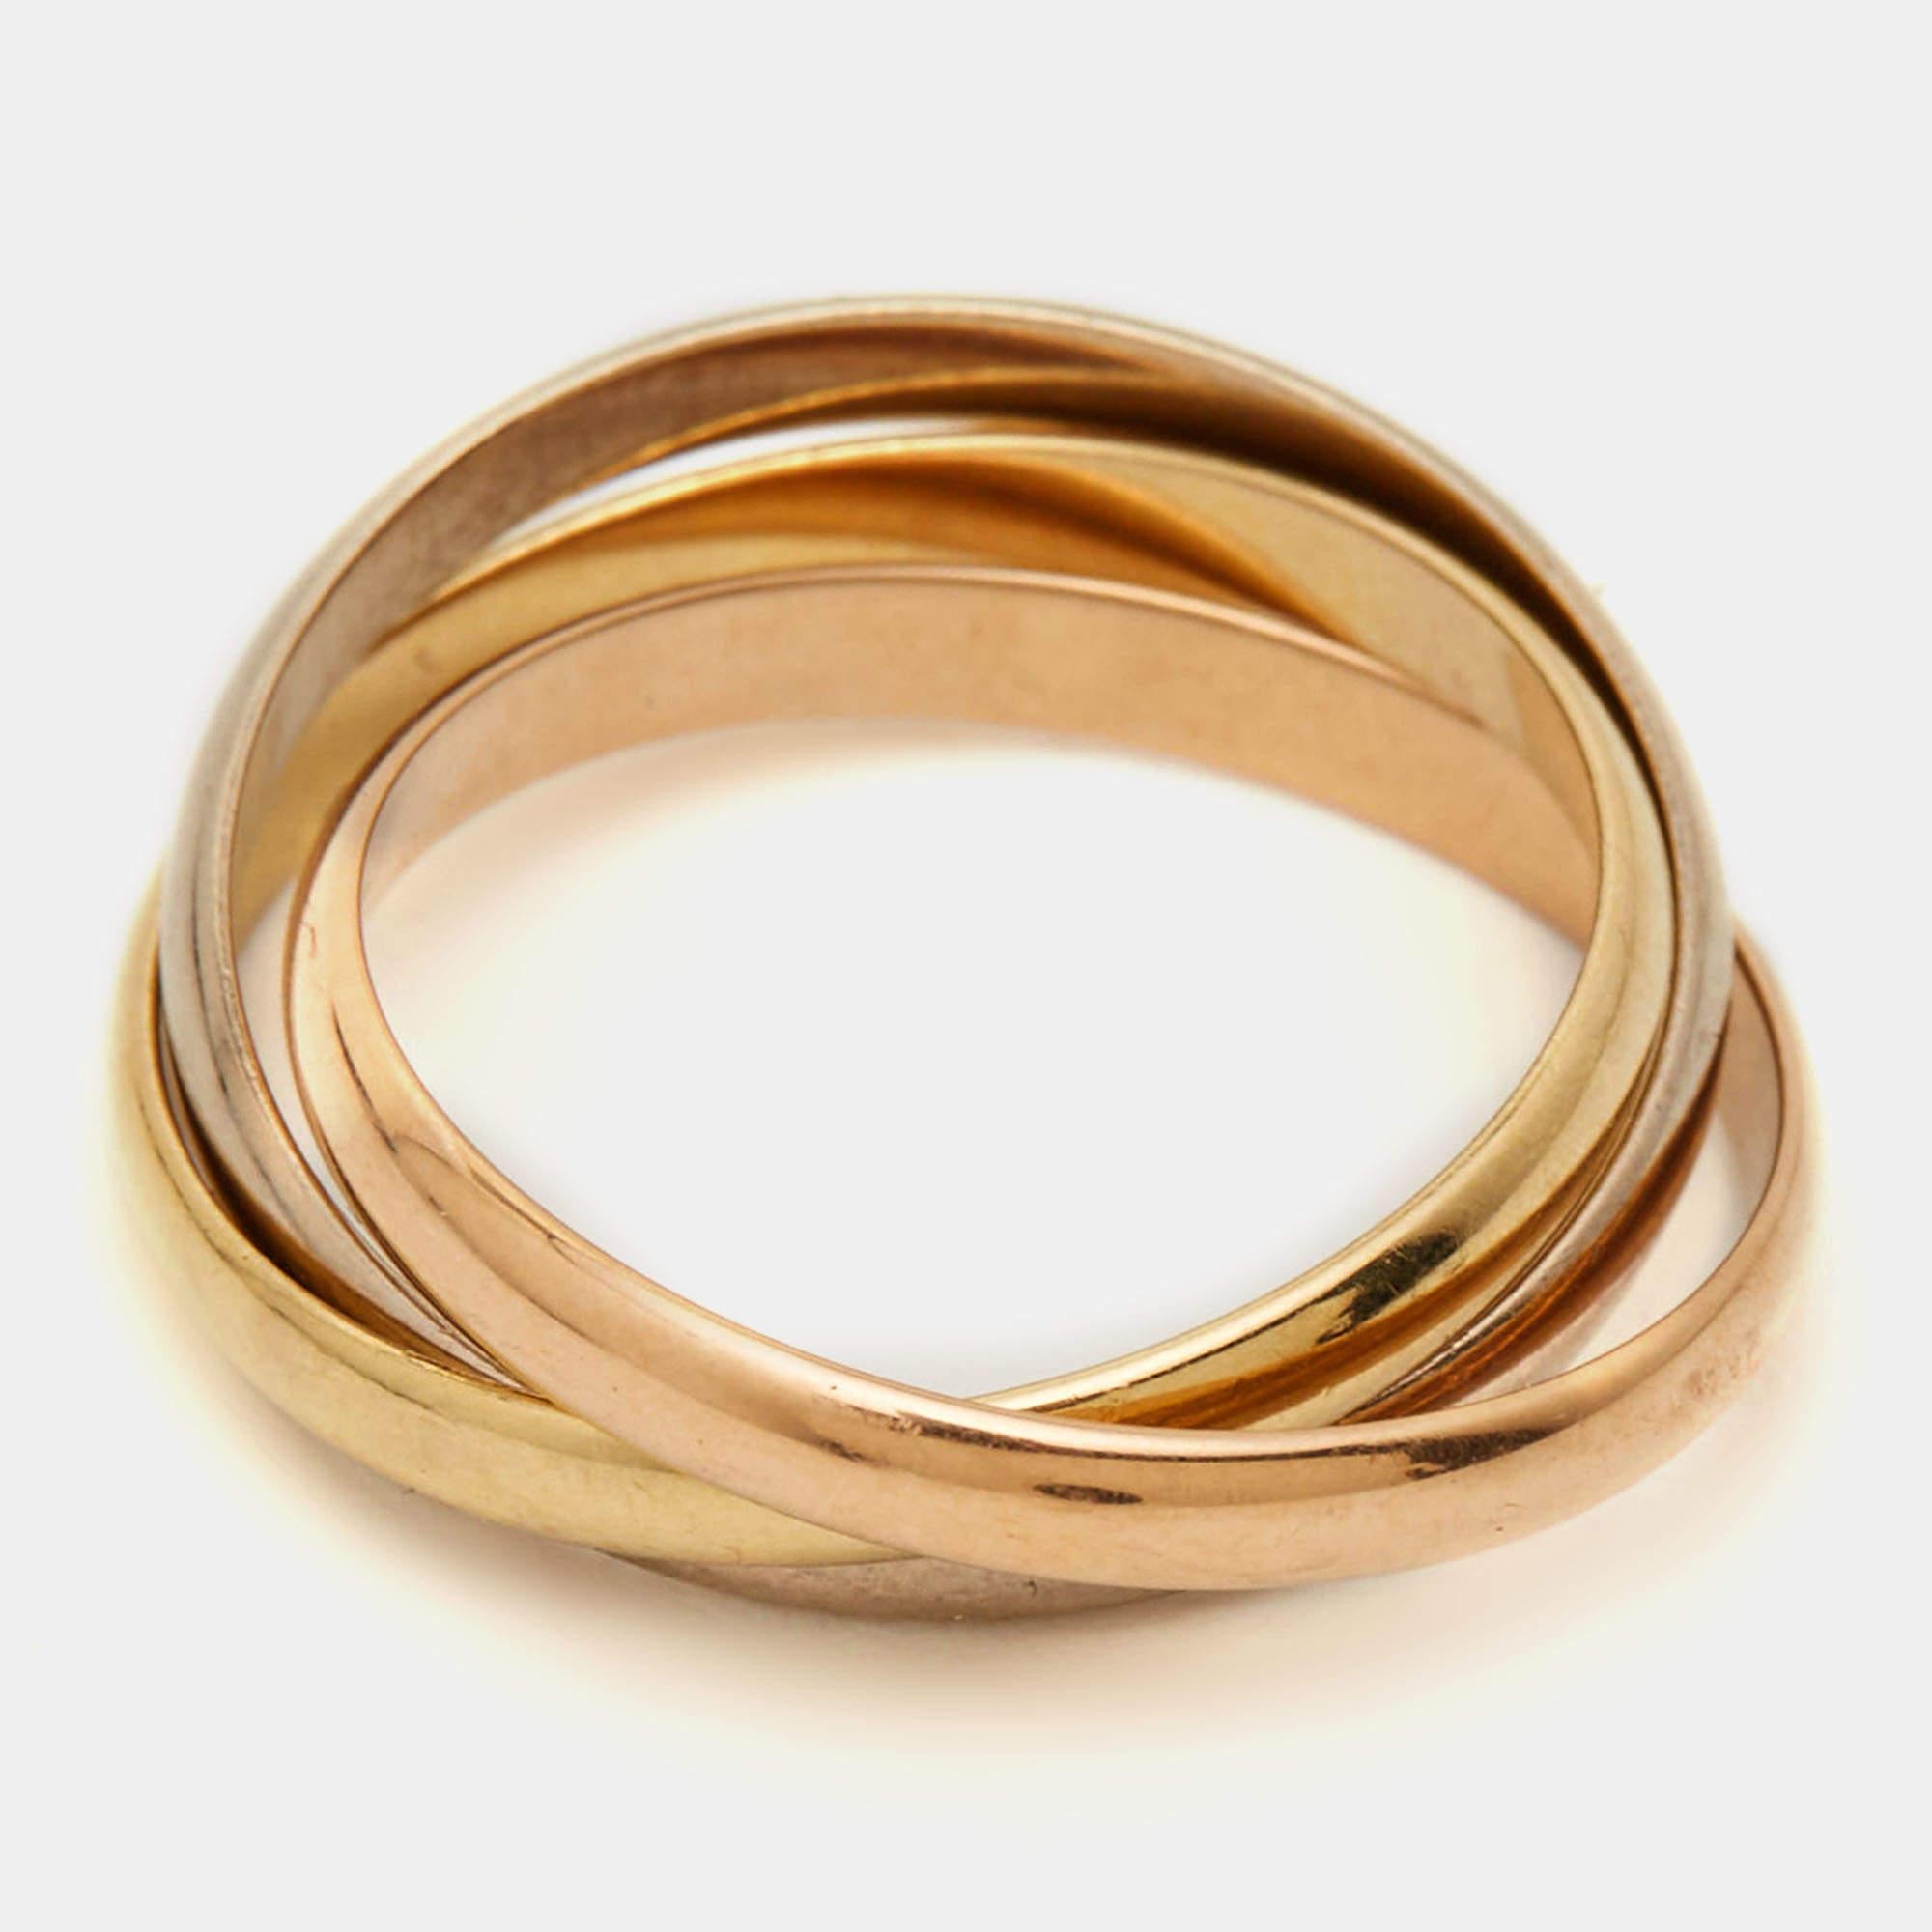 Dieser Cartier Trinity Ring ist ein echter Hingucker an Ihrer Hand. Es ist ein meisterhaft gefertigtes Schmuckstück, das zeitlosen Luxus und anspruchsvolle Eleganz verkörpert.

